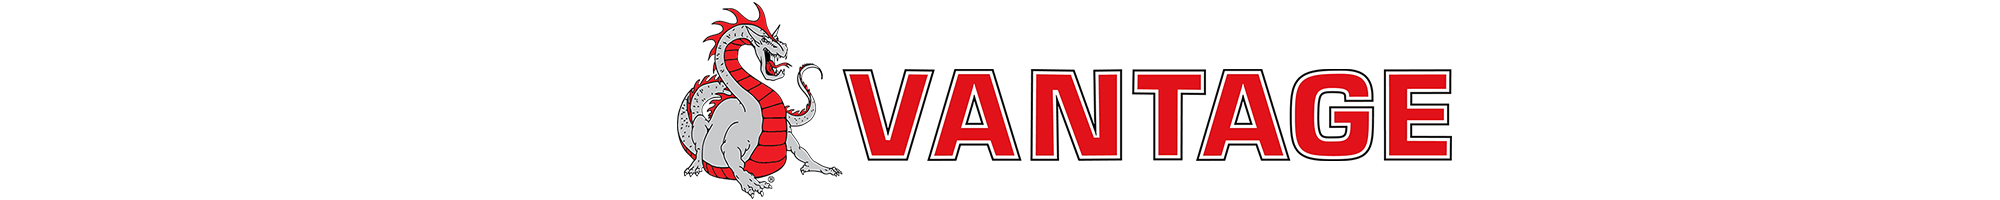 vantage logo with dragon header